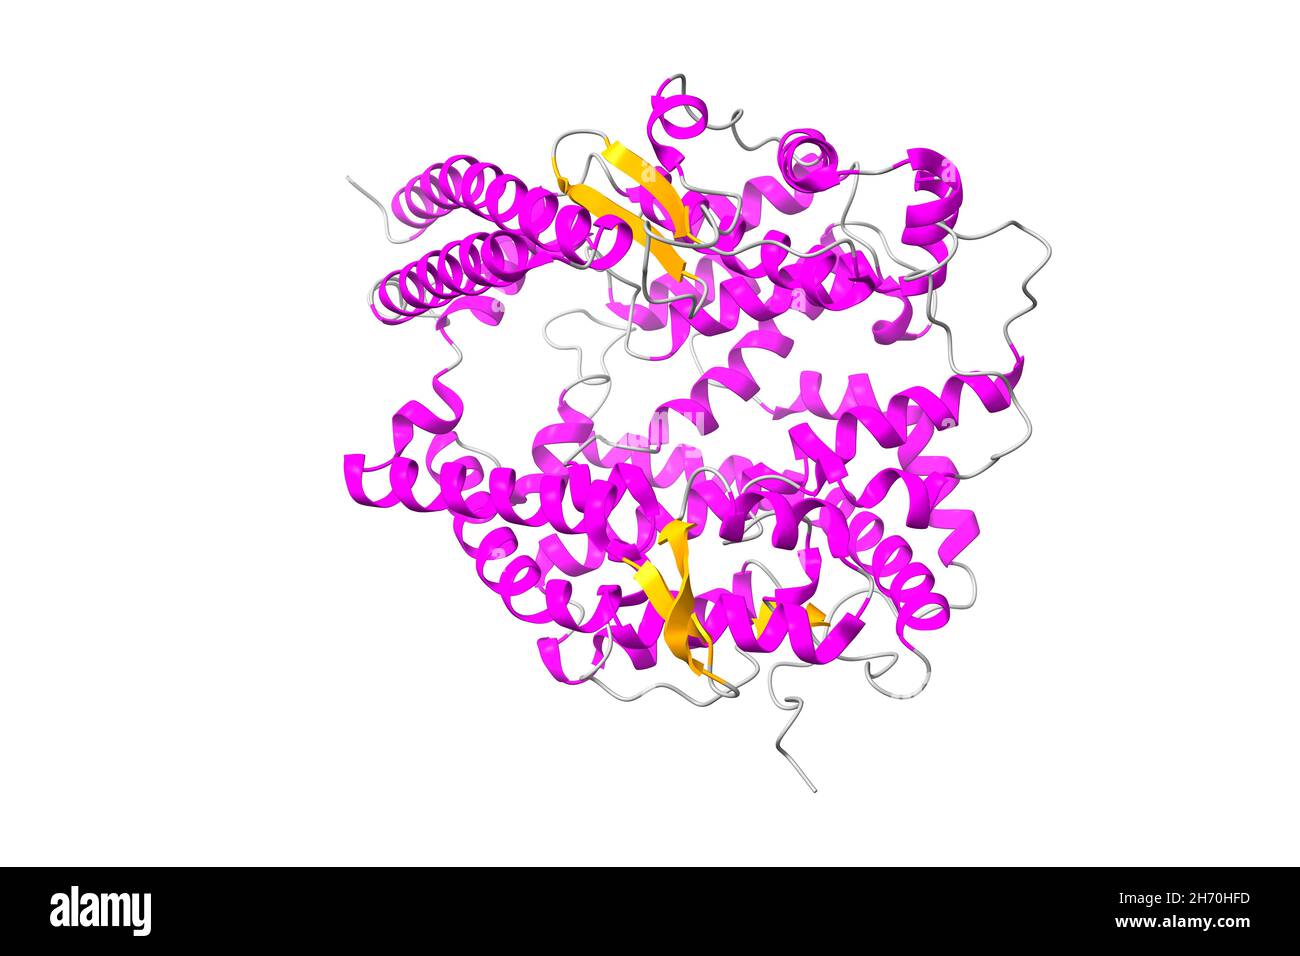 Struktur des humanen Angiotensin-konvertierenden Enzyms 2 (ACE2). 3D Cartoon-Modell, sekundäre Struktur Farbgebung, PDB 1r42, weißer Hintergrund Stockfoto